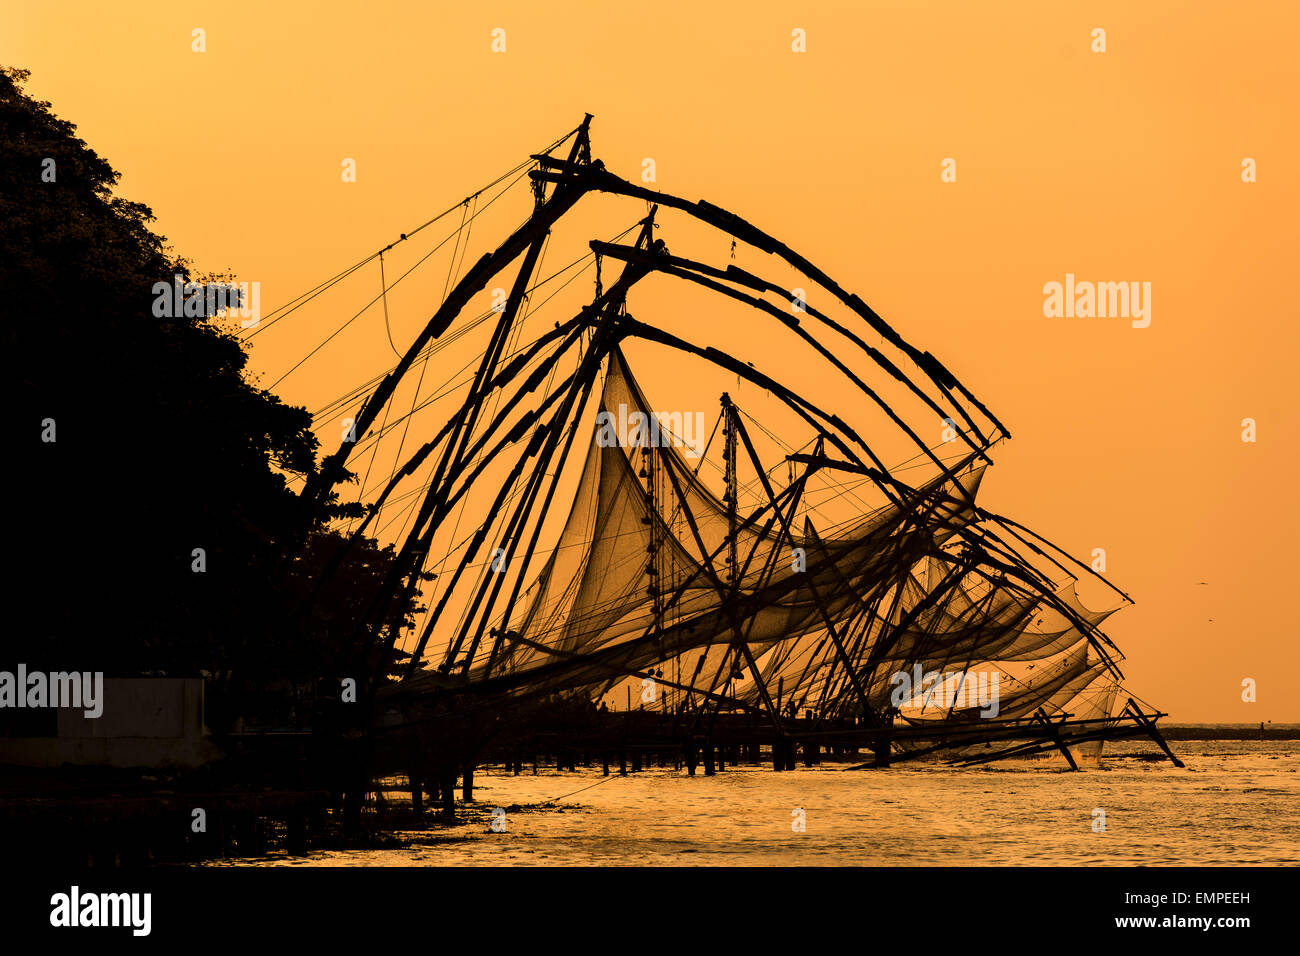 Cinese di reti da pesca, tramonto, Arabian Sea coast, a Kochi, Kerala, nel sud dell'India, India Foto Stock